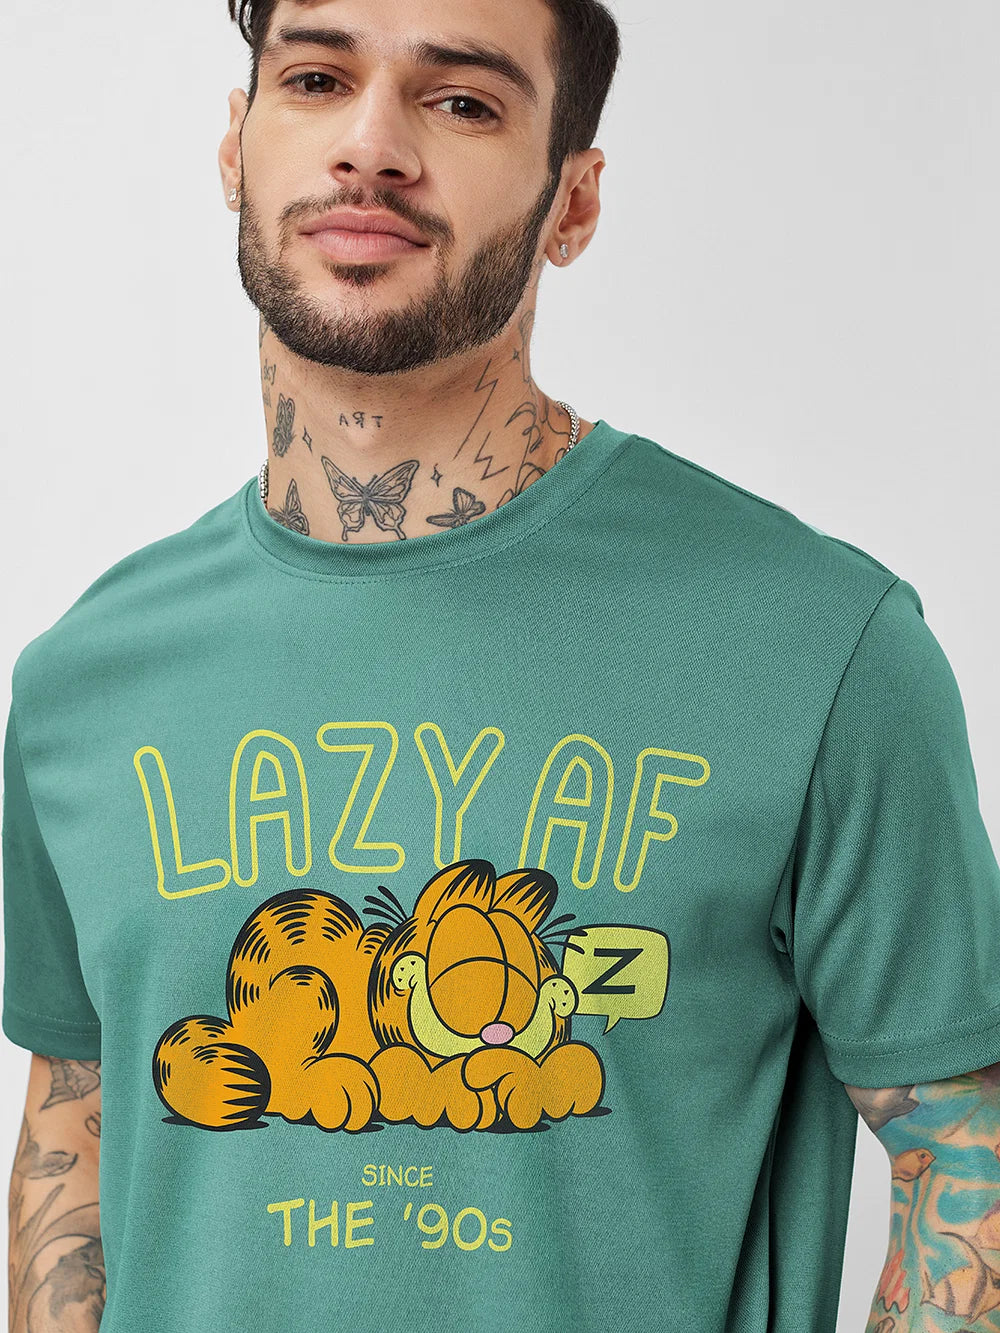 Garfield Lazy AF (UK version)